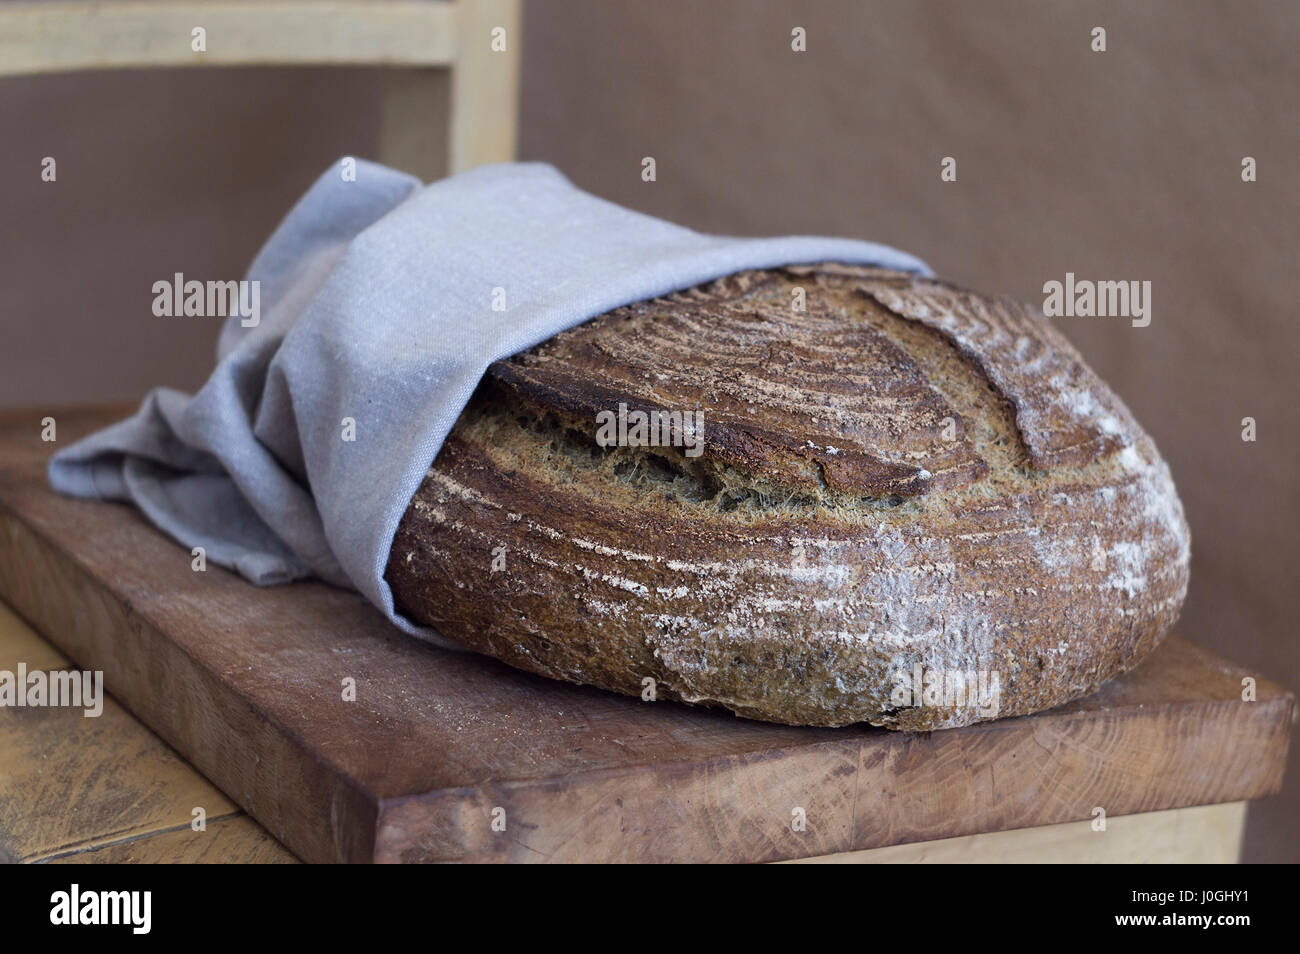 Beau pain artisanal dans une serviette sur une planche en bois Banque D'Images